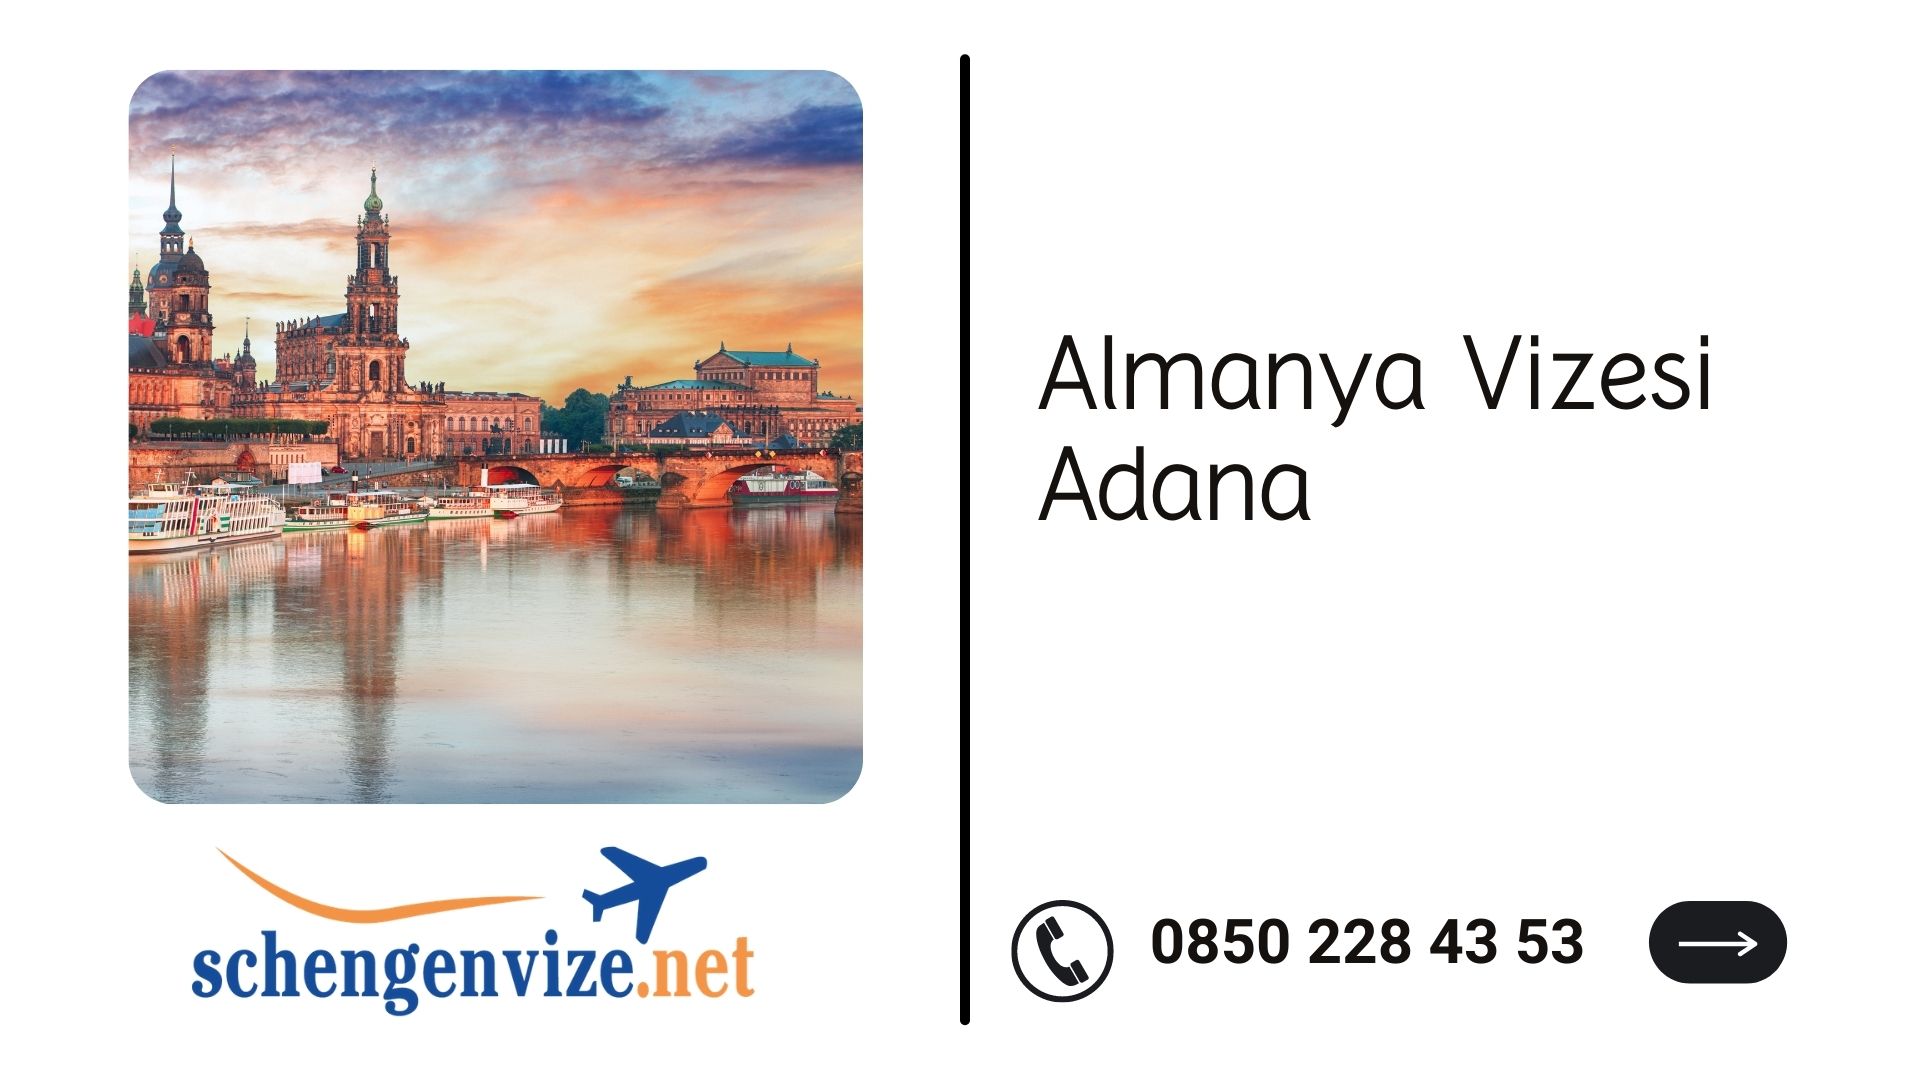 Almanya vizesi Adana